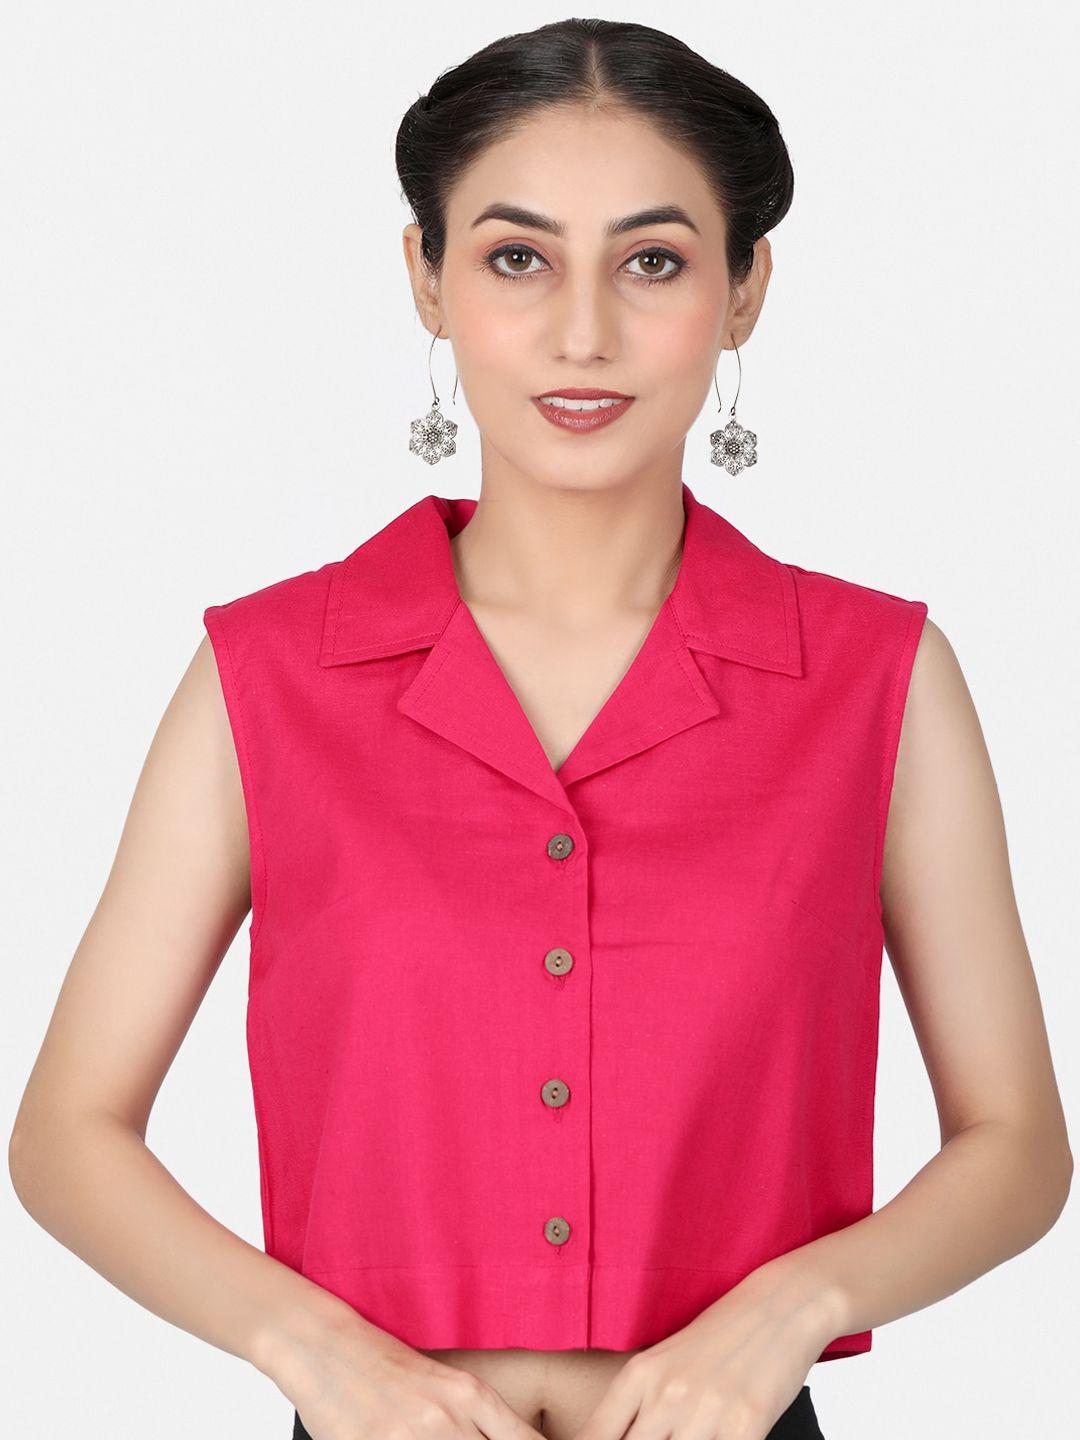 llajja shirt collar cotton saree blouse